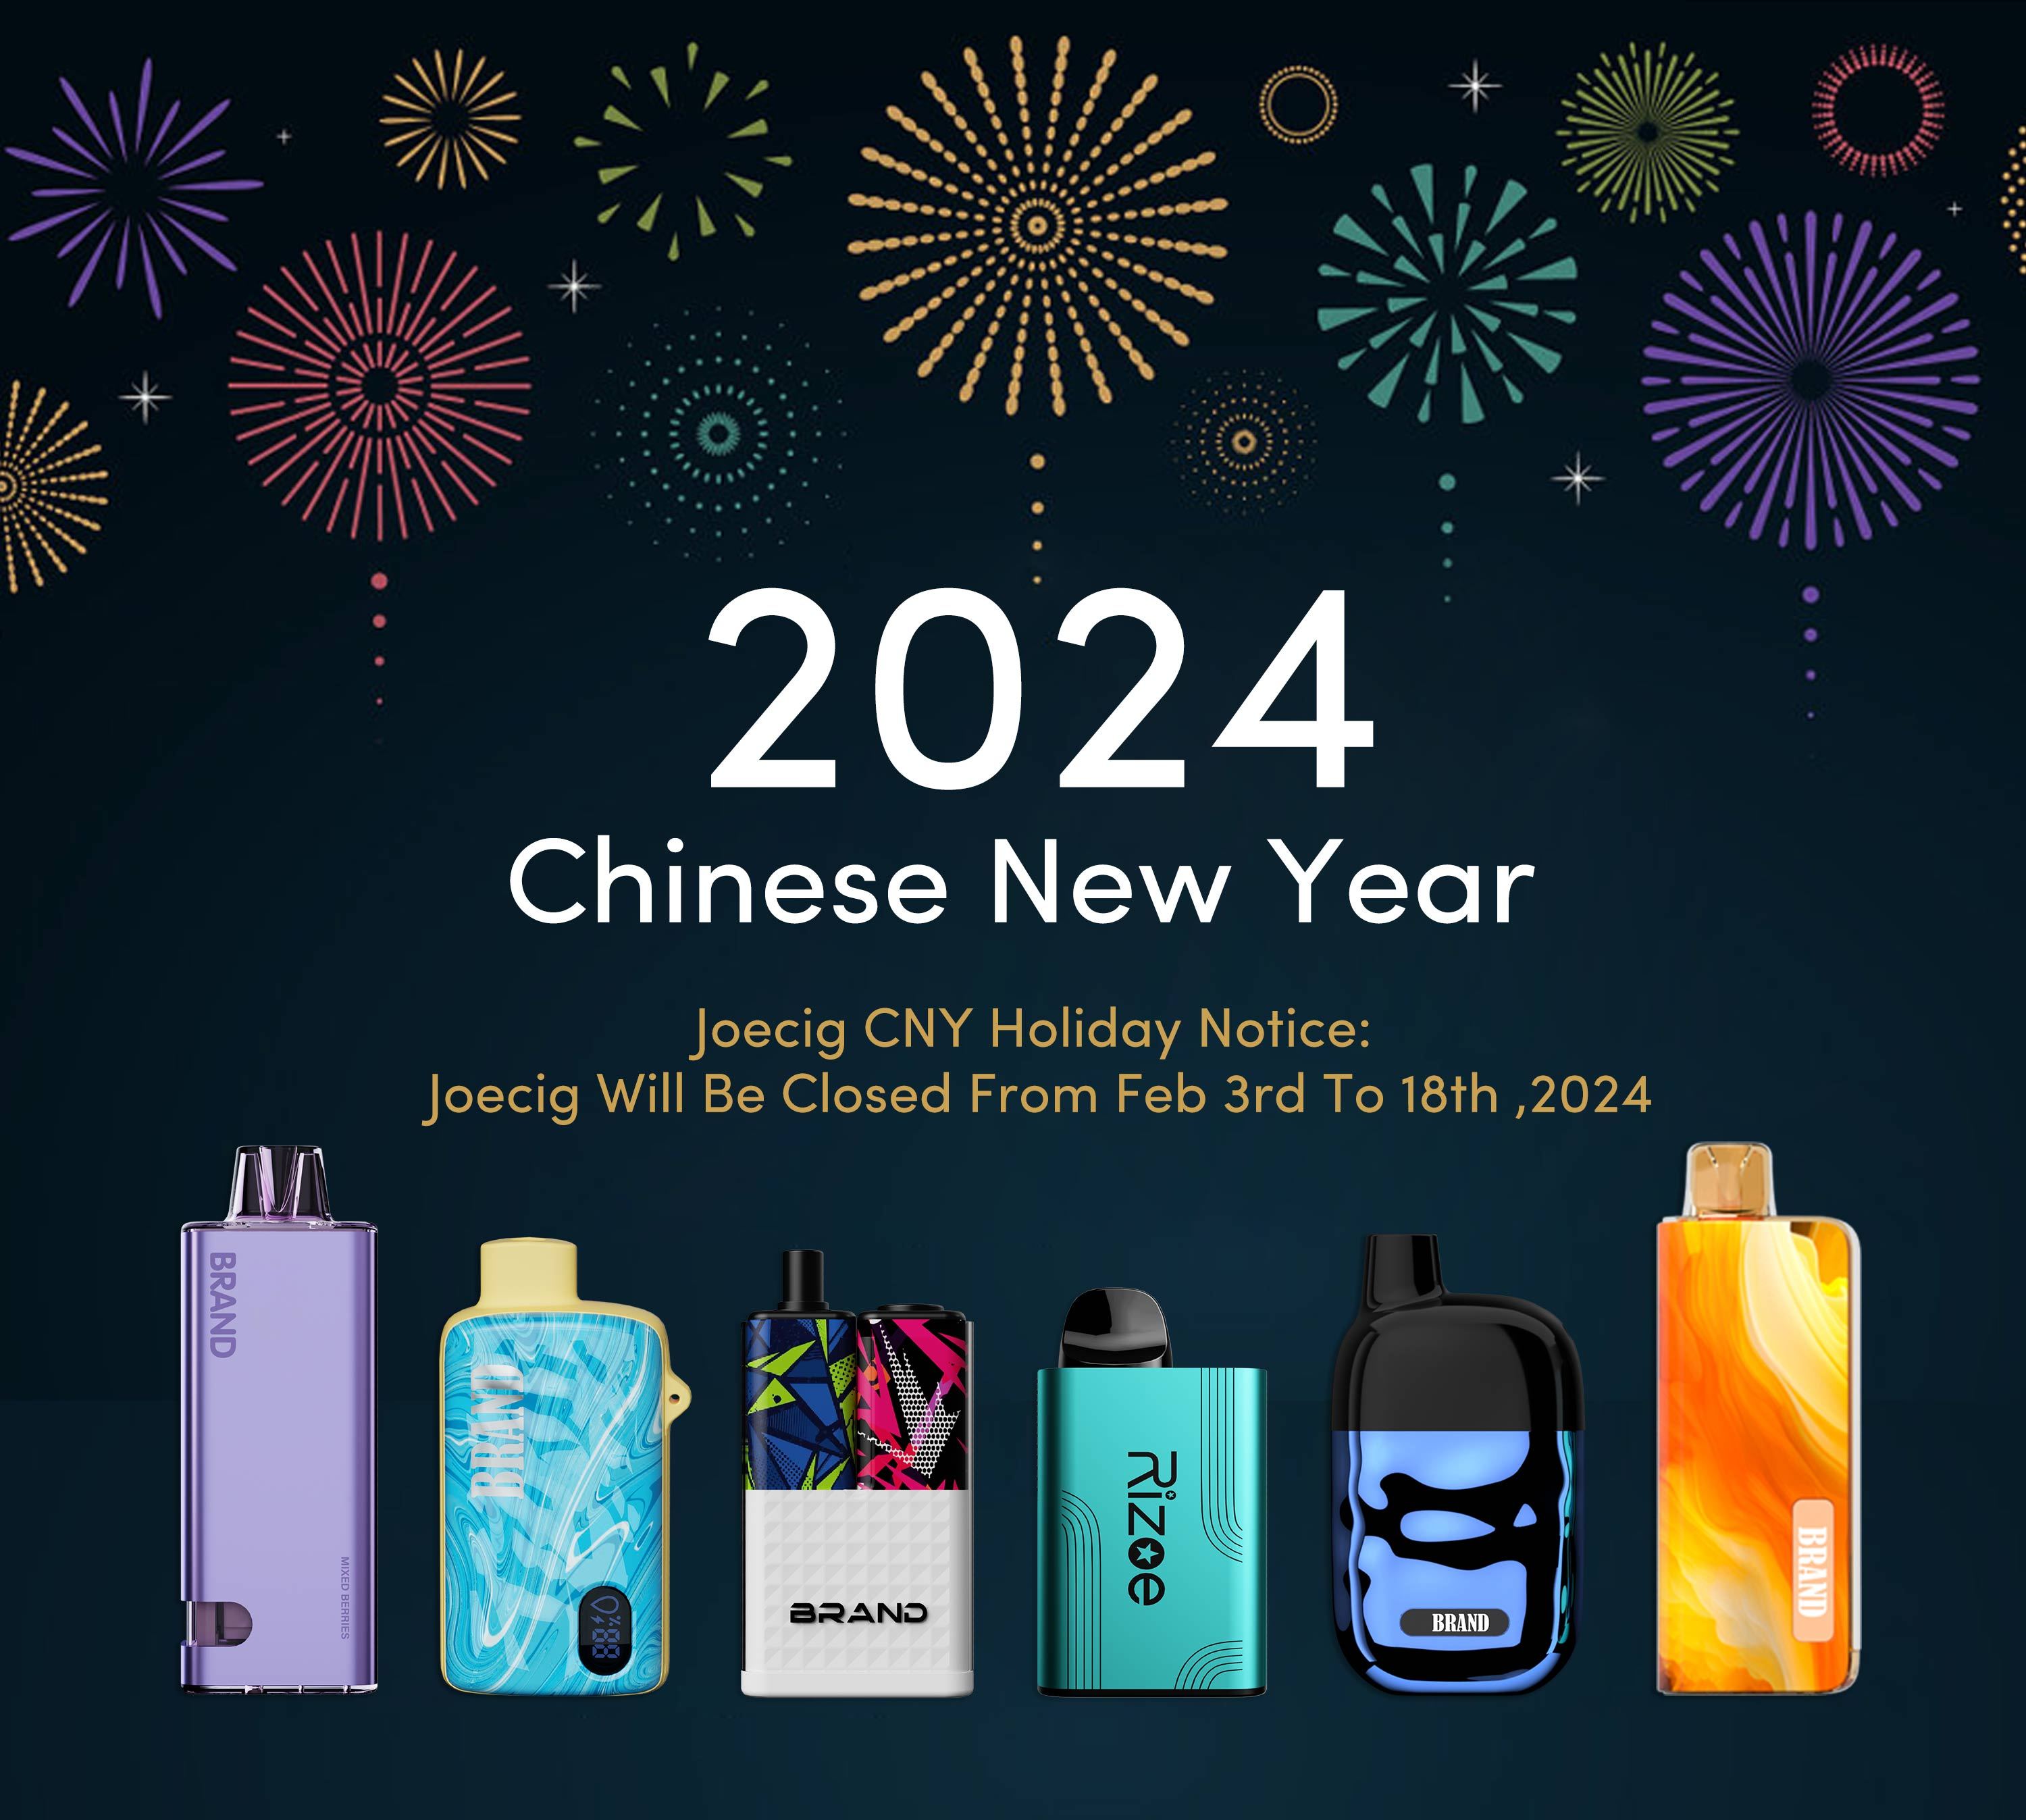 إشعار عطلة Joecig CNY: سيتم إغلاق Joecig من 3 إلى 18 فبراير 2024